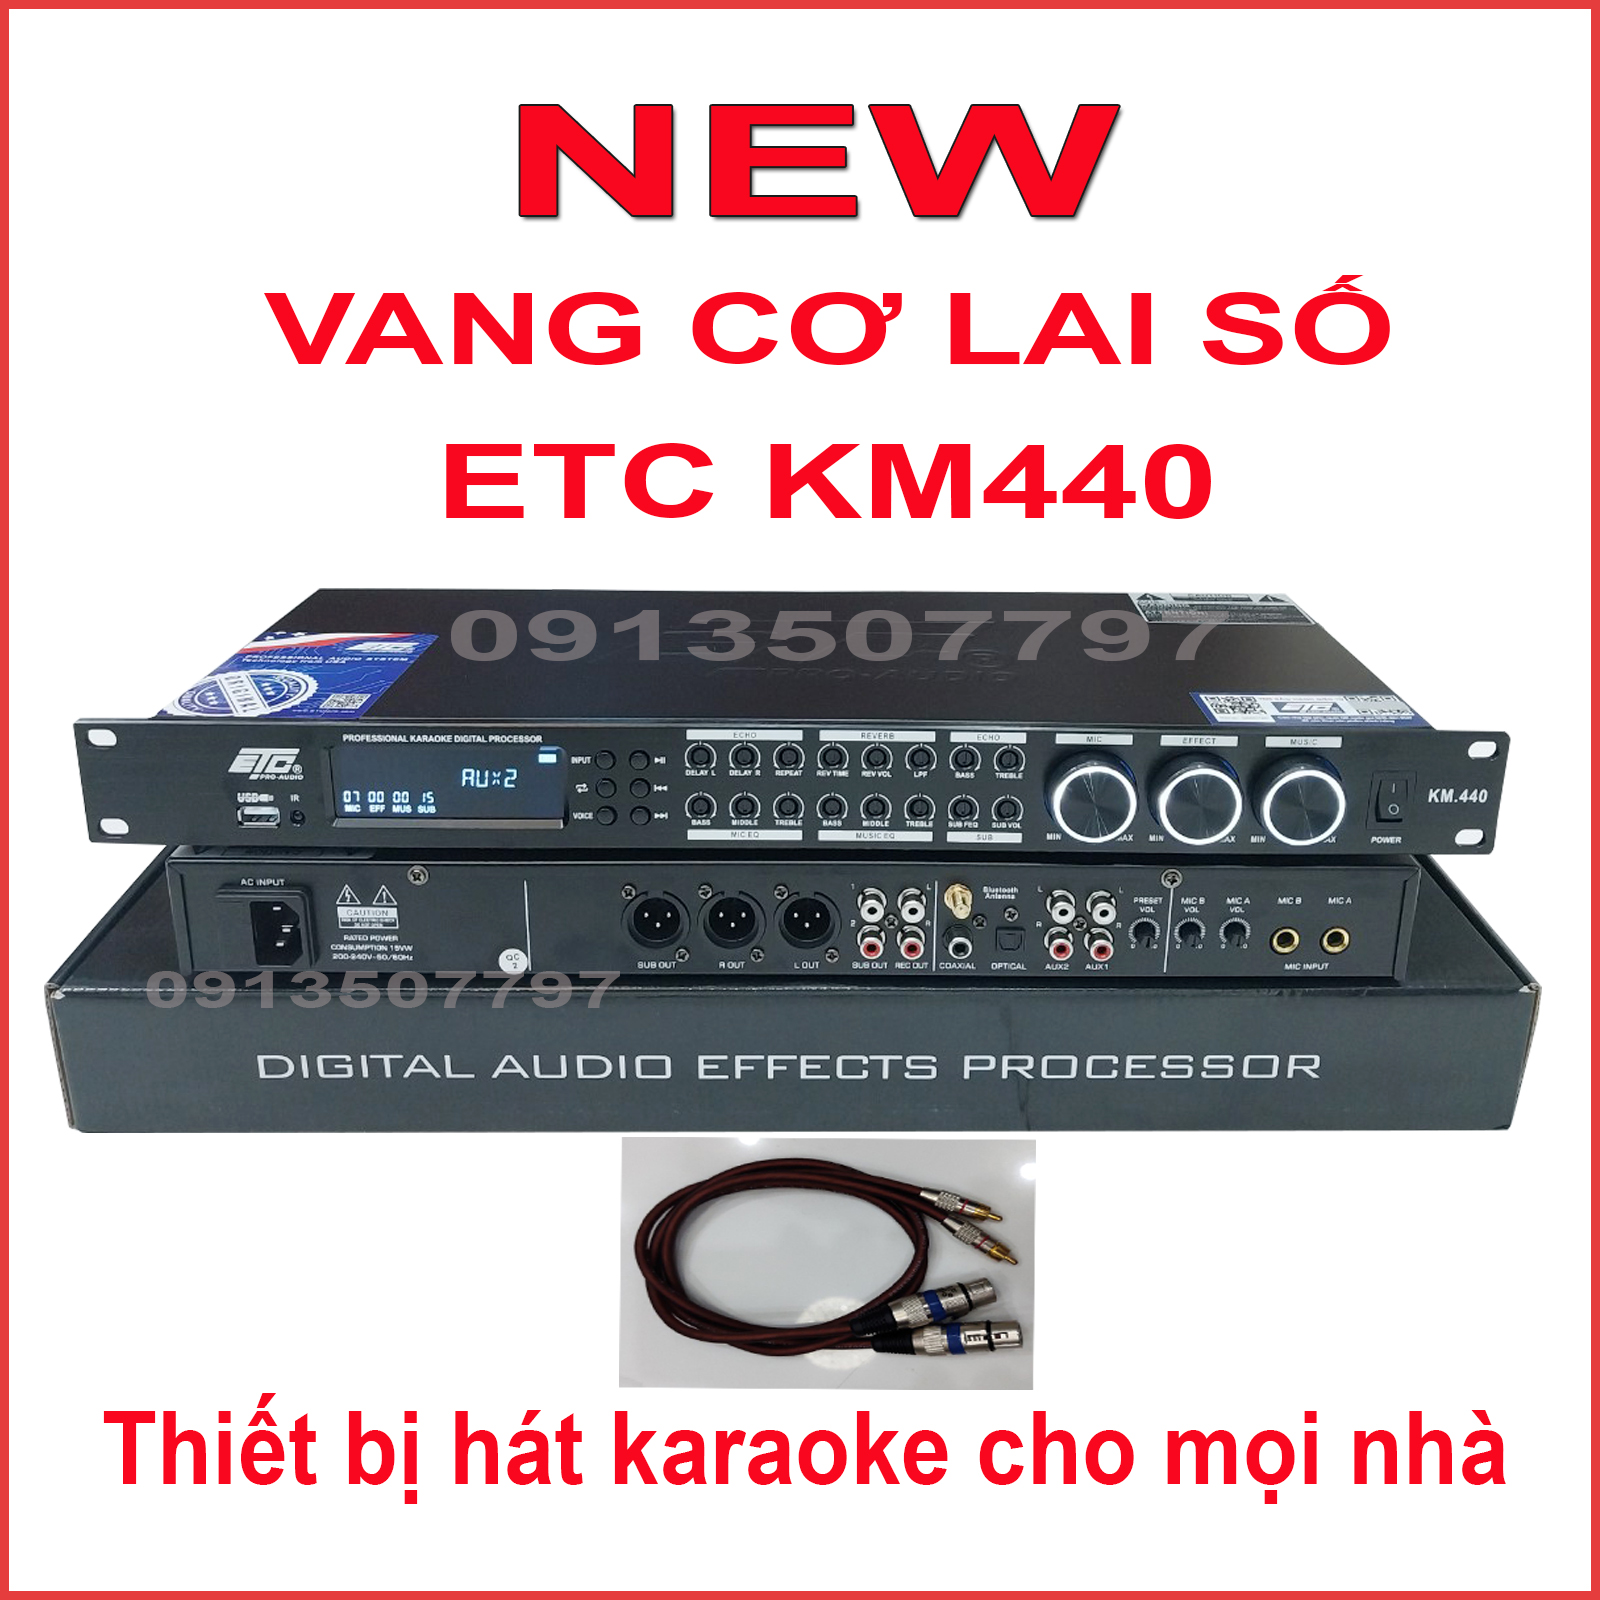 Vang cơ lai số ETC KM440 sản phẩm karaoke gia đình  chống hú tốt  chất giọng sáng trung thực